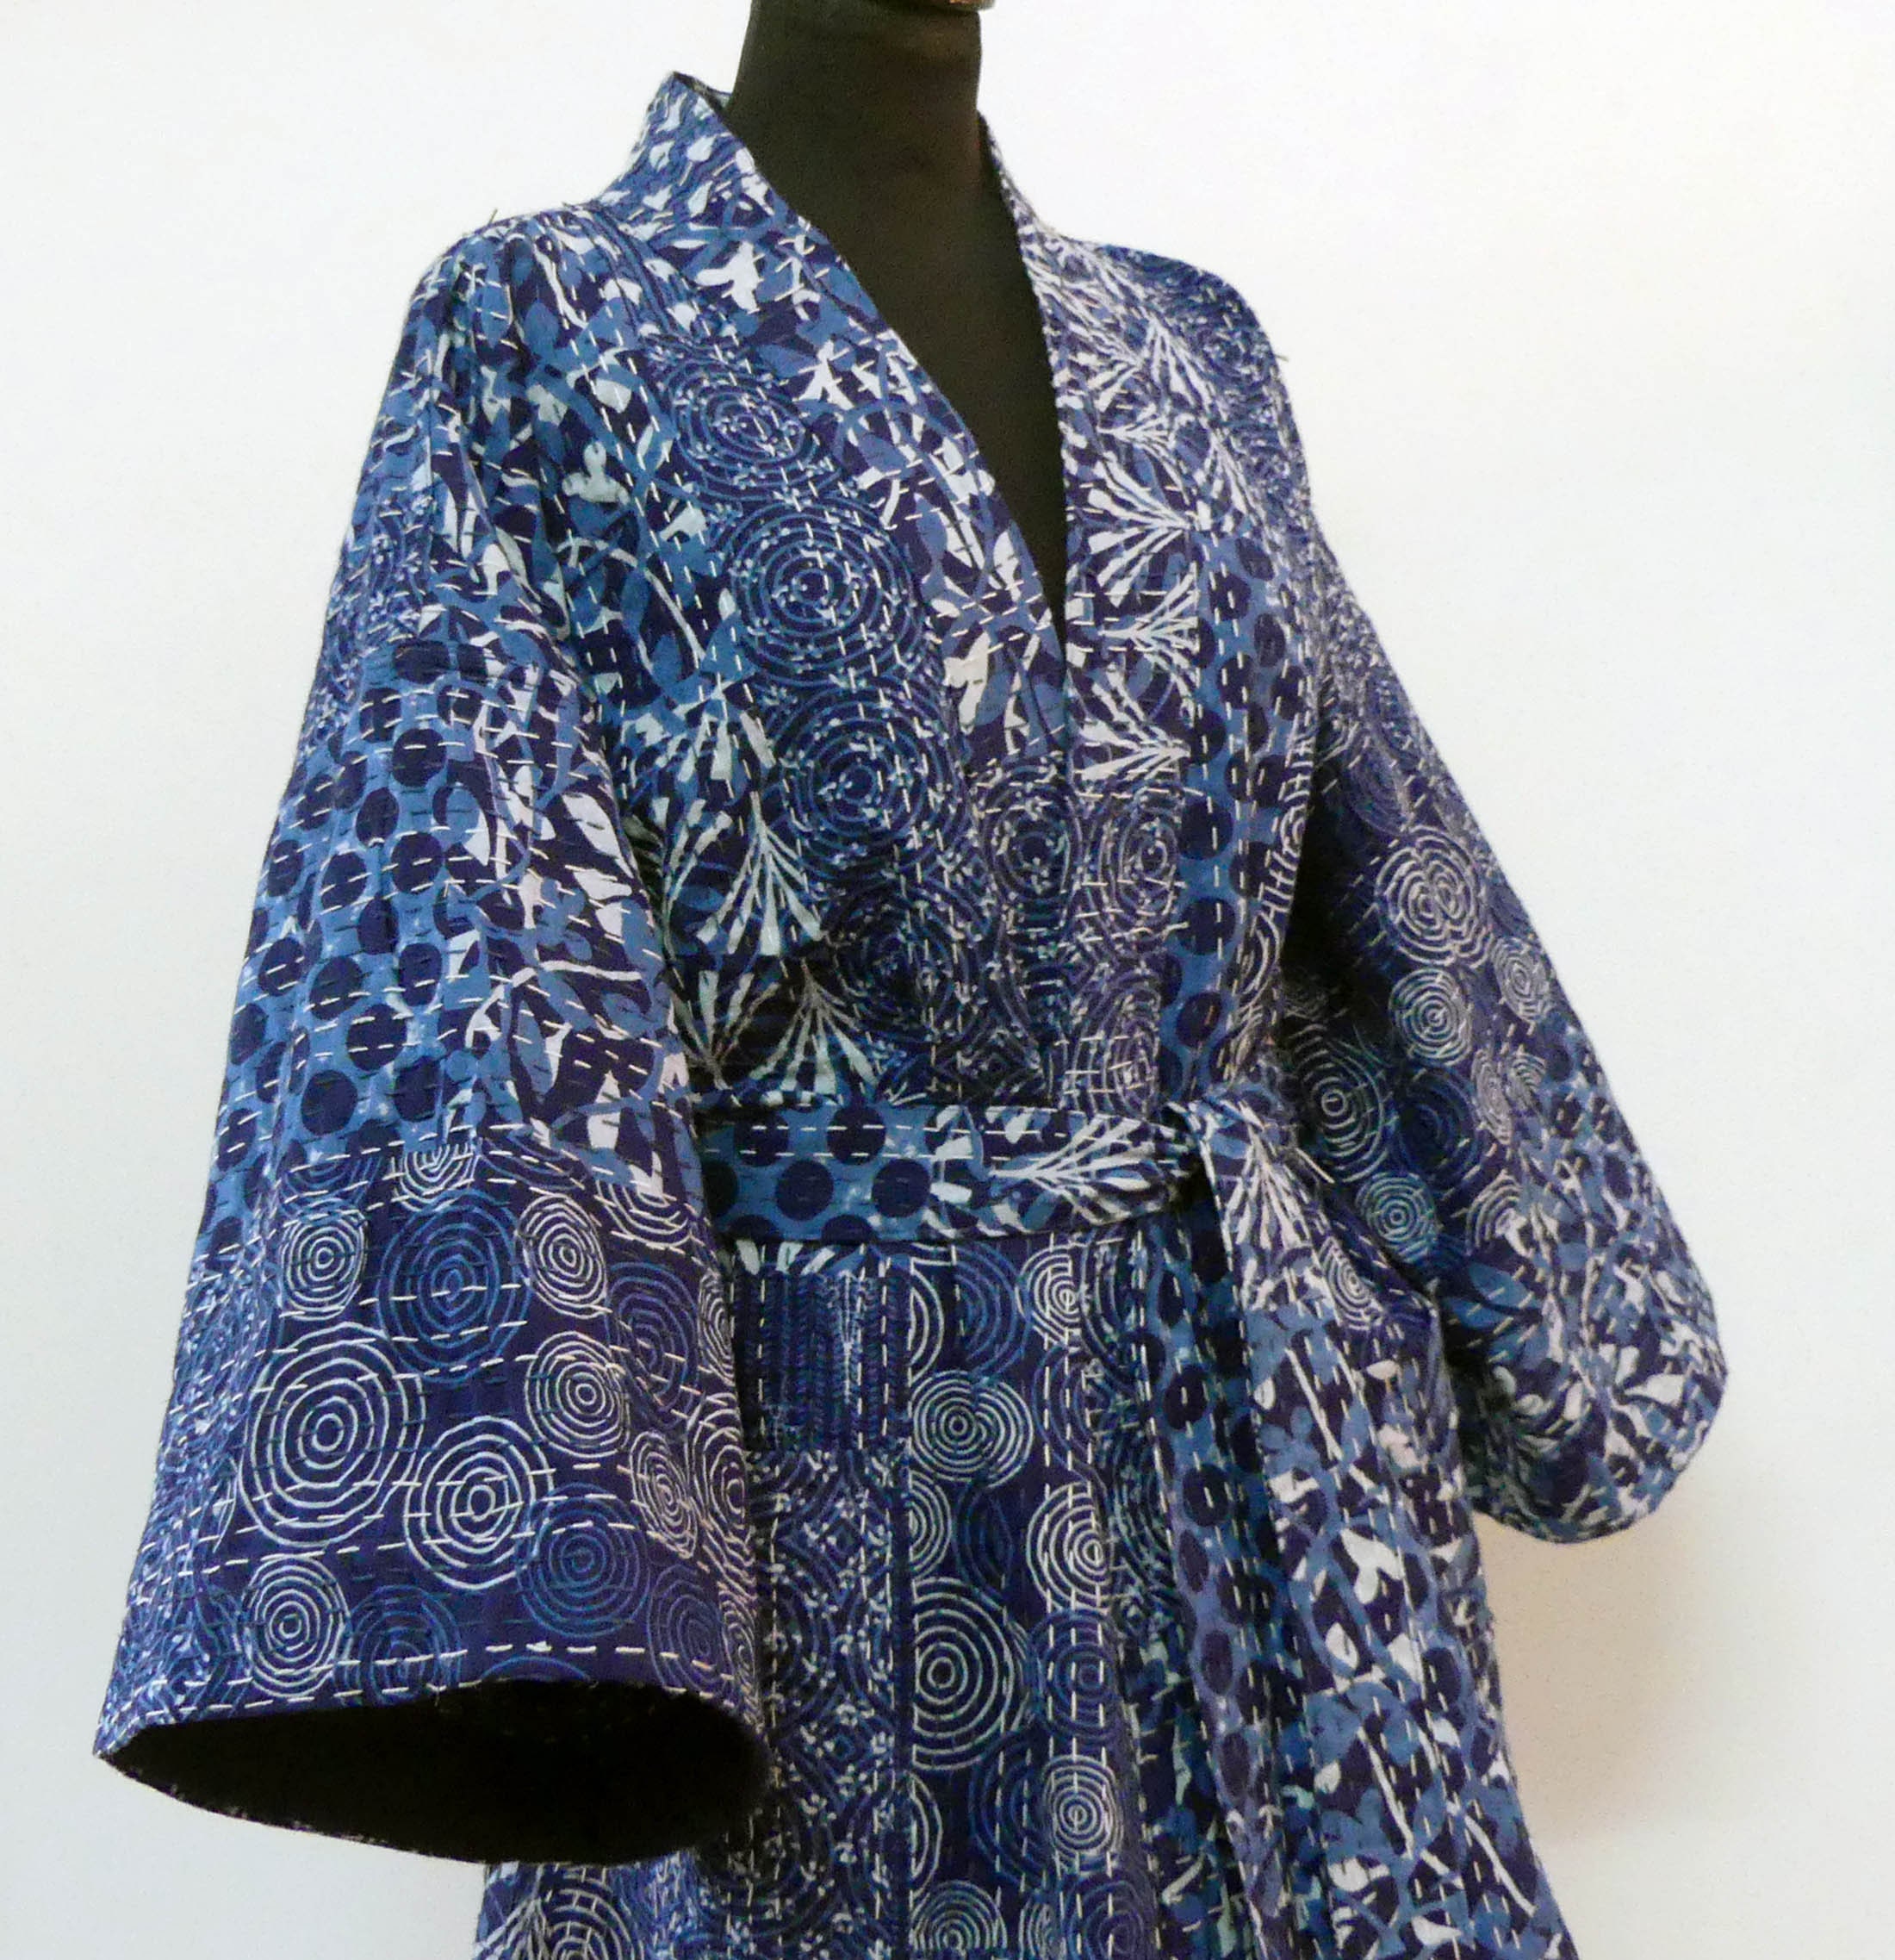 Long Kimono for Men or Women in Indigo and White Gaudri Cotton - Etsy UK